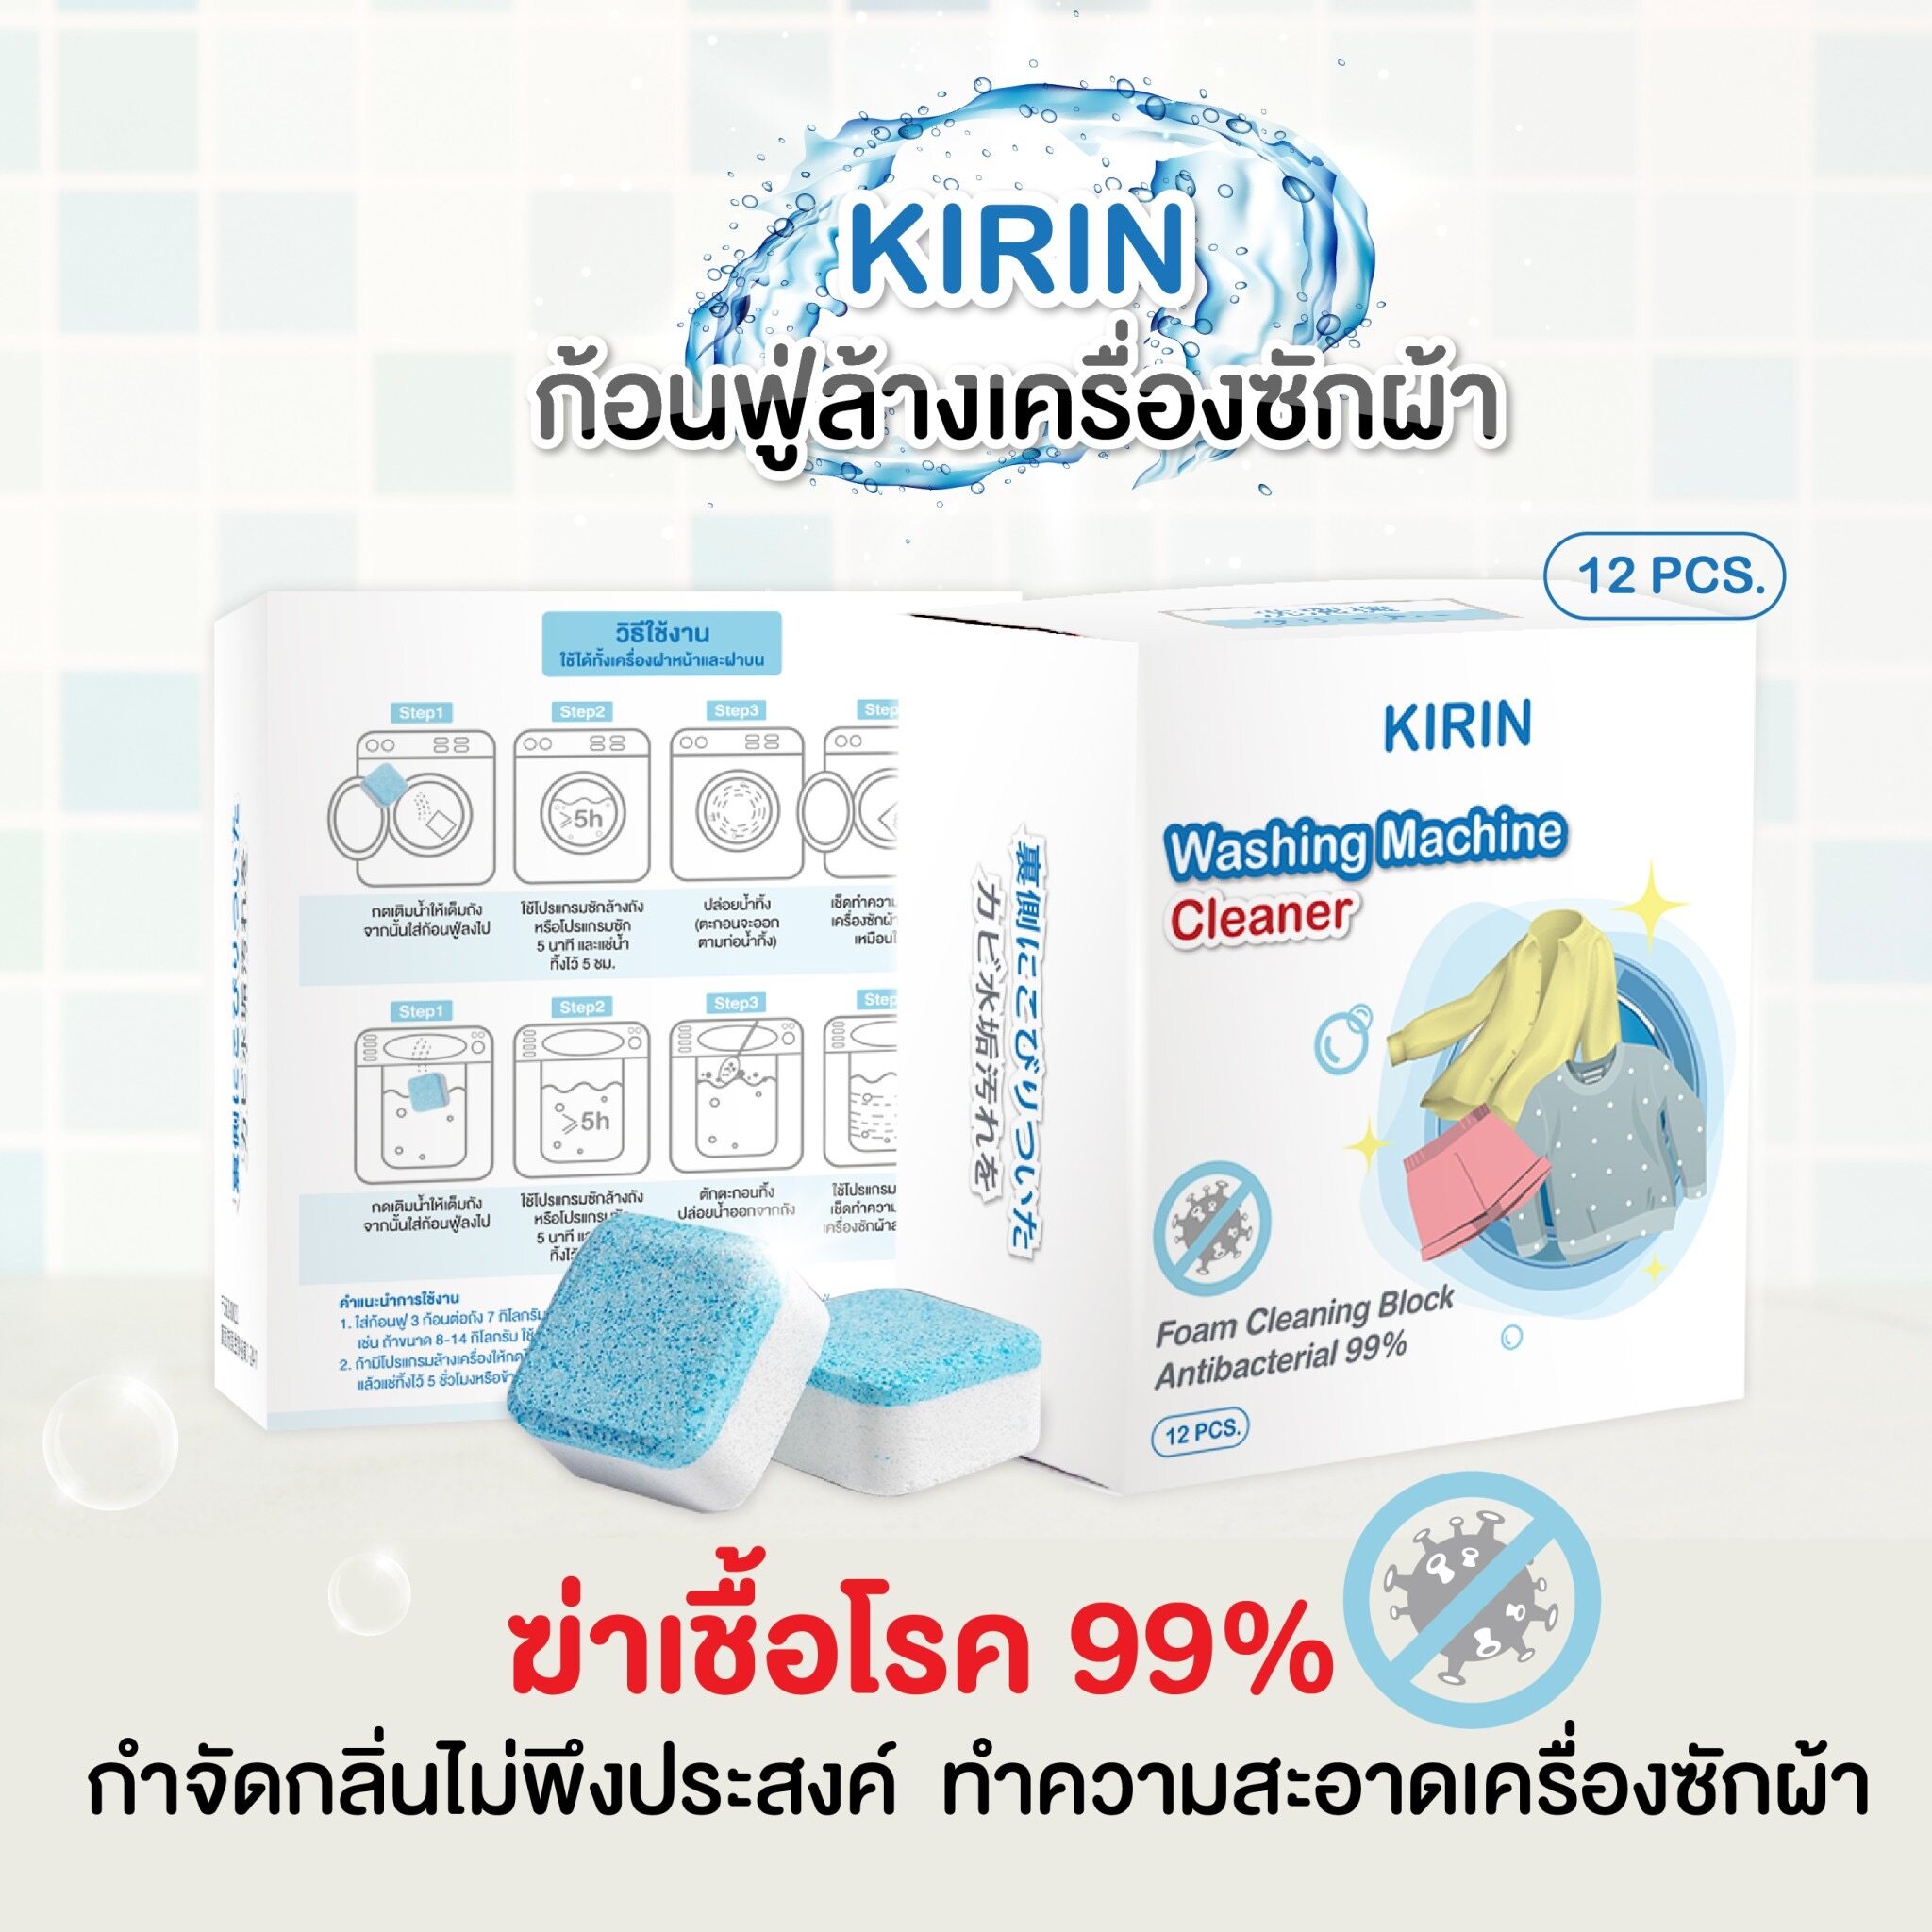 KBR ?? ก้อนฟู่ล้างเครื่องซักผ้า KIRIN นำเข้าจากญี่ปุ่น (12 ก้อน) ฆ่าเชื้อโรค กำจัดกลิ่นอับ ทำความสะอาดเครื่องซักผ้า